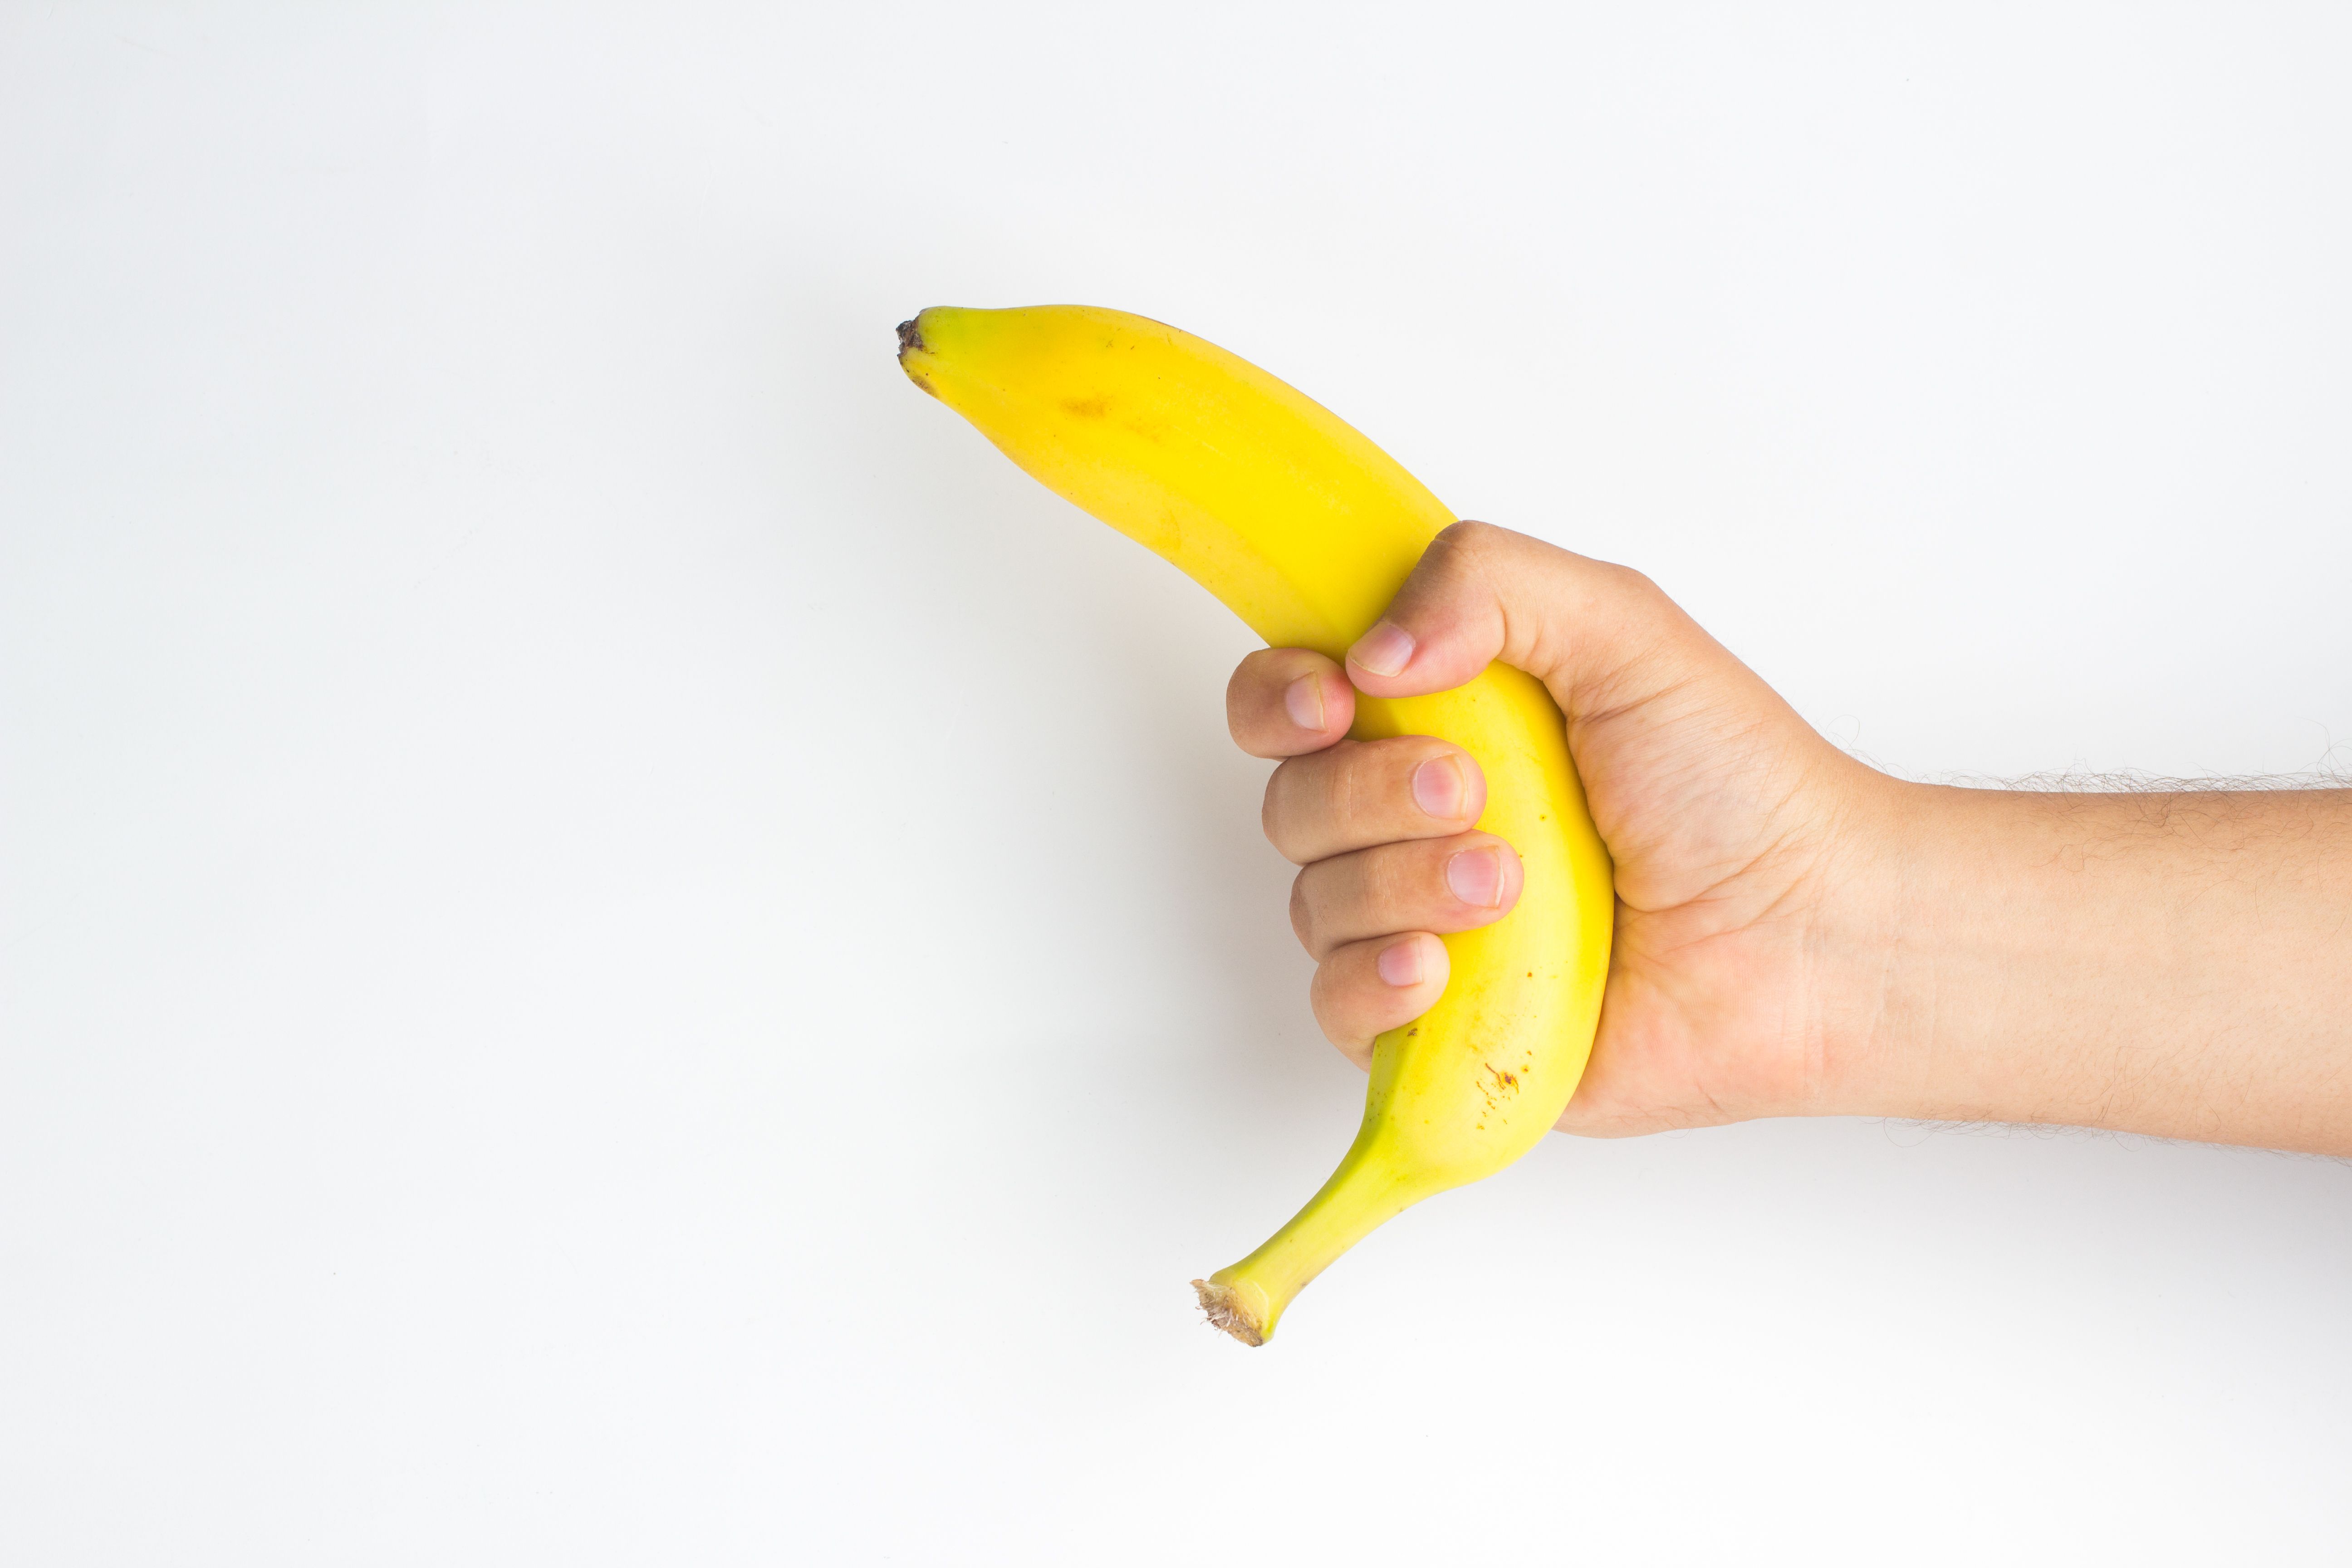 Masturbación con cáscara de plátano, parecido al sexo oral según Reddit imagen